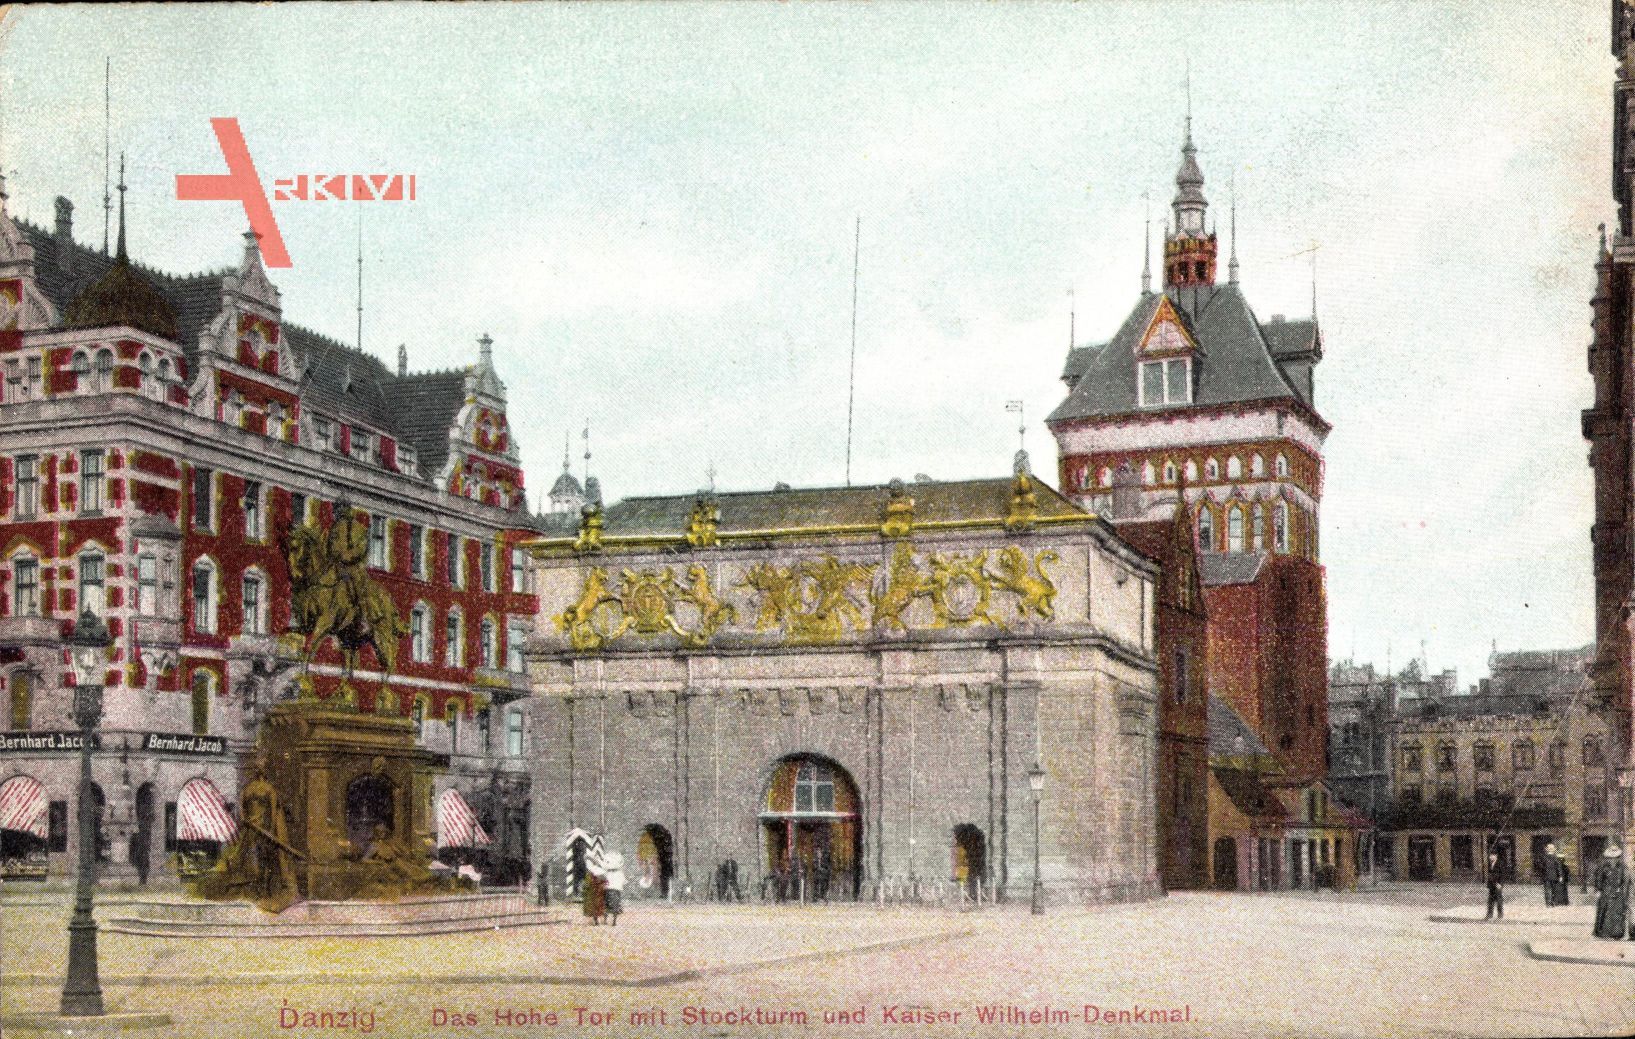 Gdańsk Danzig, Das Hohe Tor mit Stockturm und Kaiser Wilhelm Denkmal